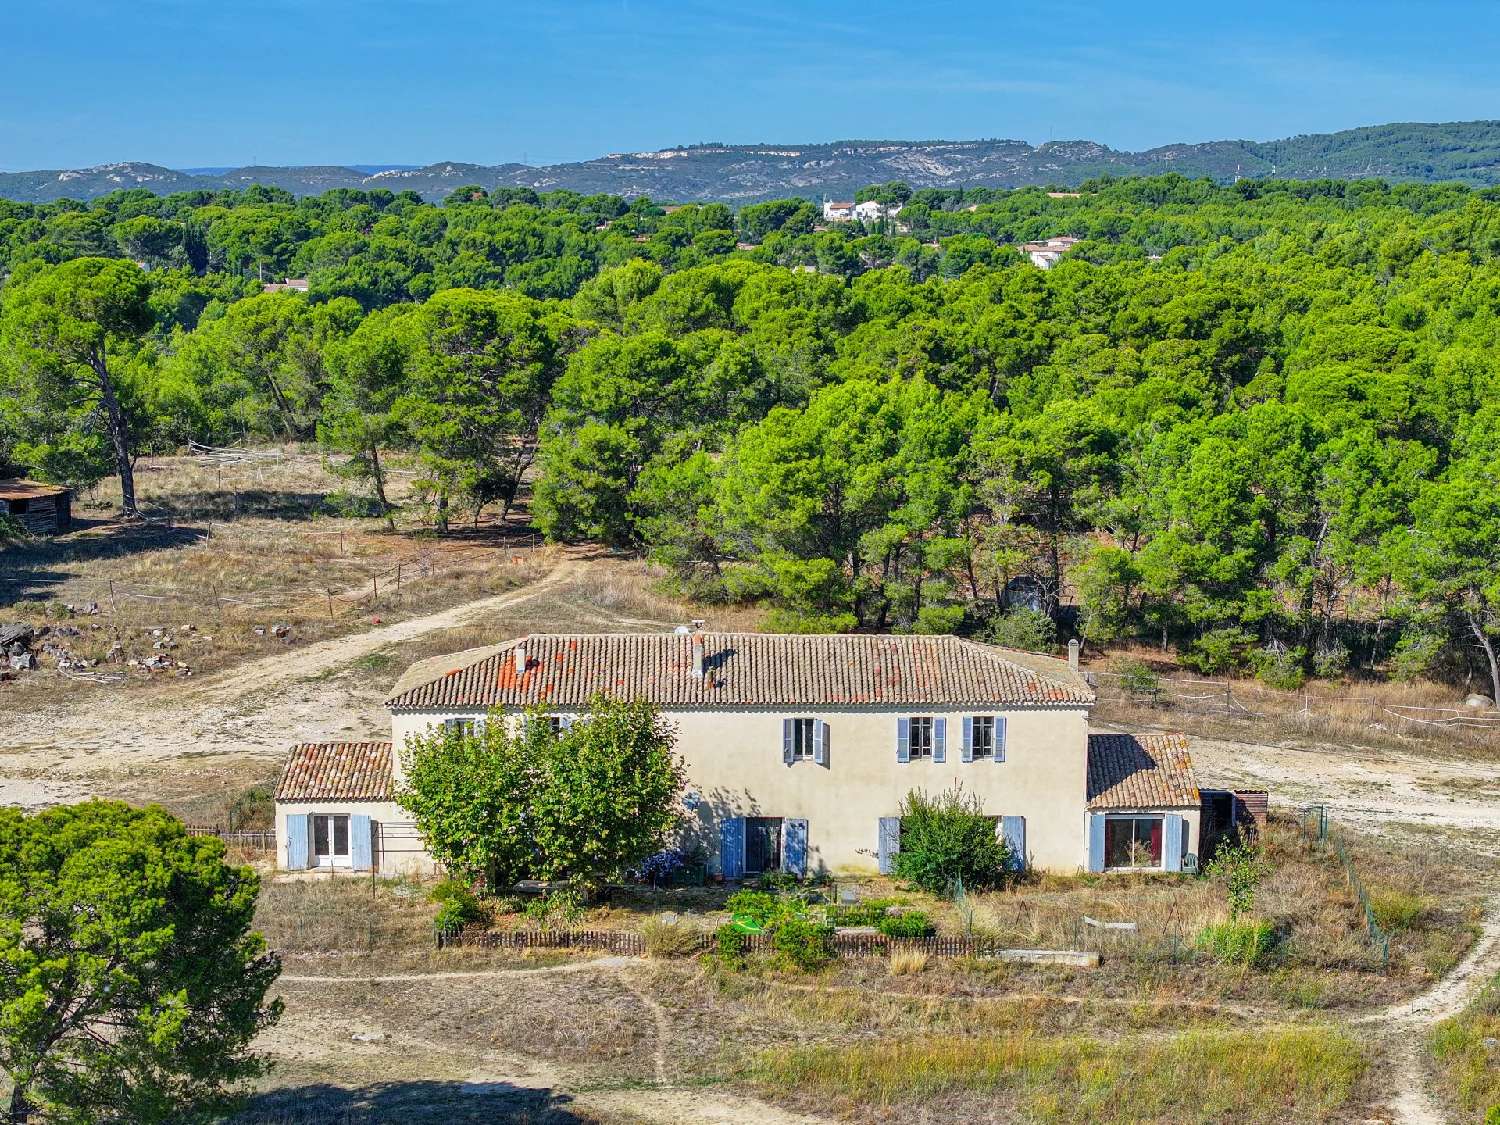  for sale villa Aix-en-Provence Bouches-du-Rhône 2